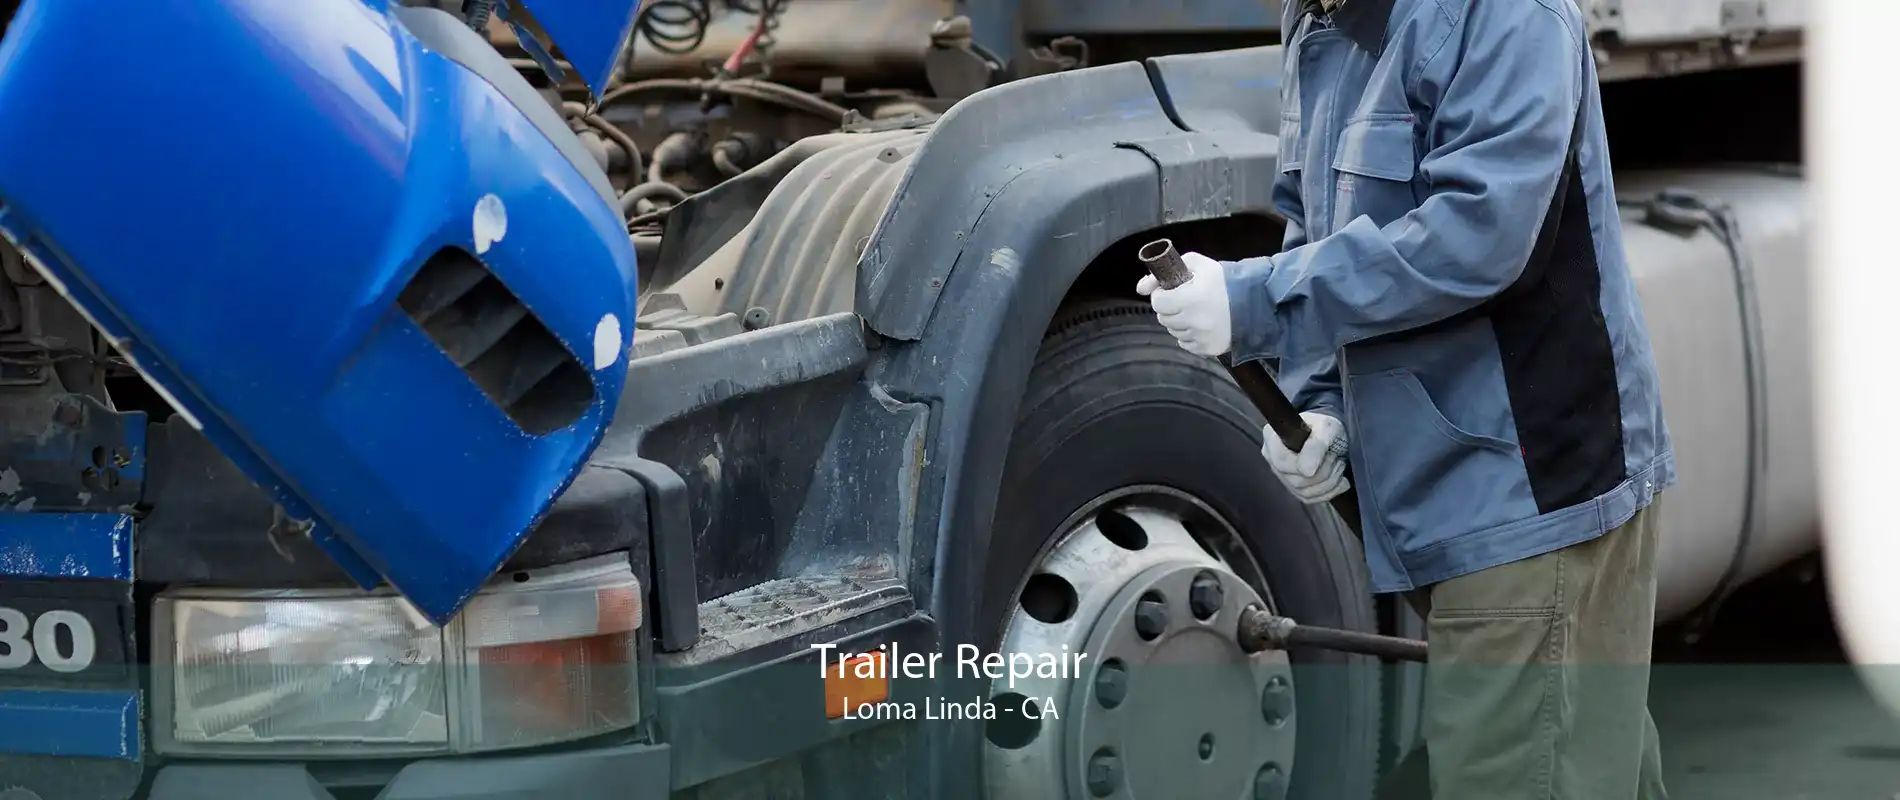 Trailer Repair Loma Linda - CA